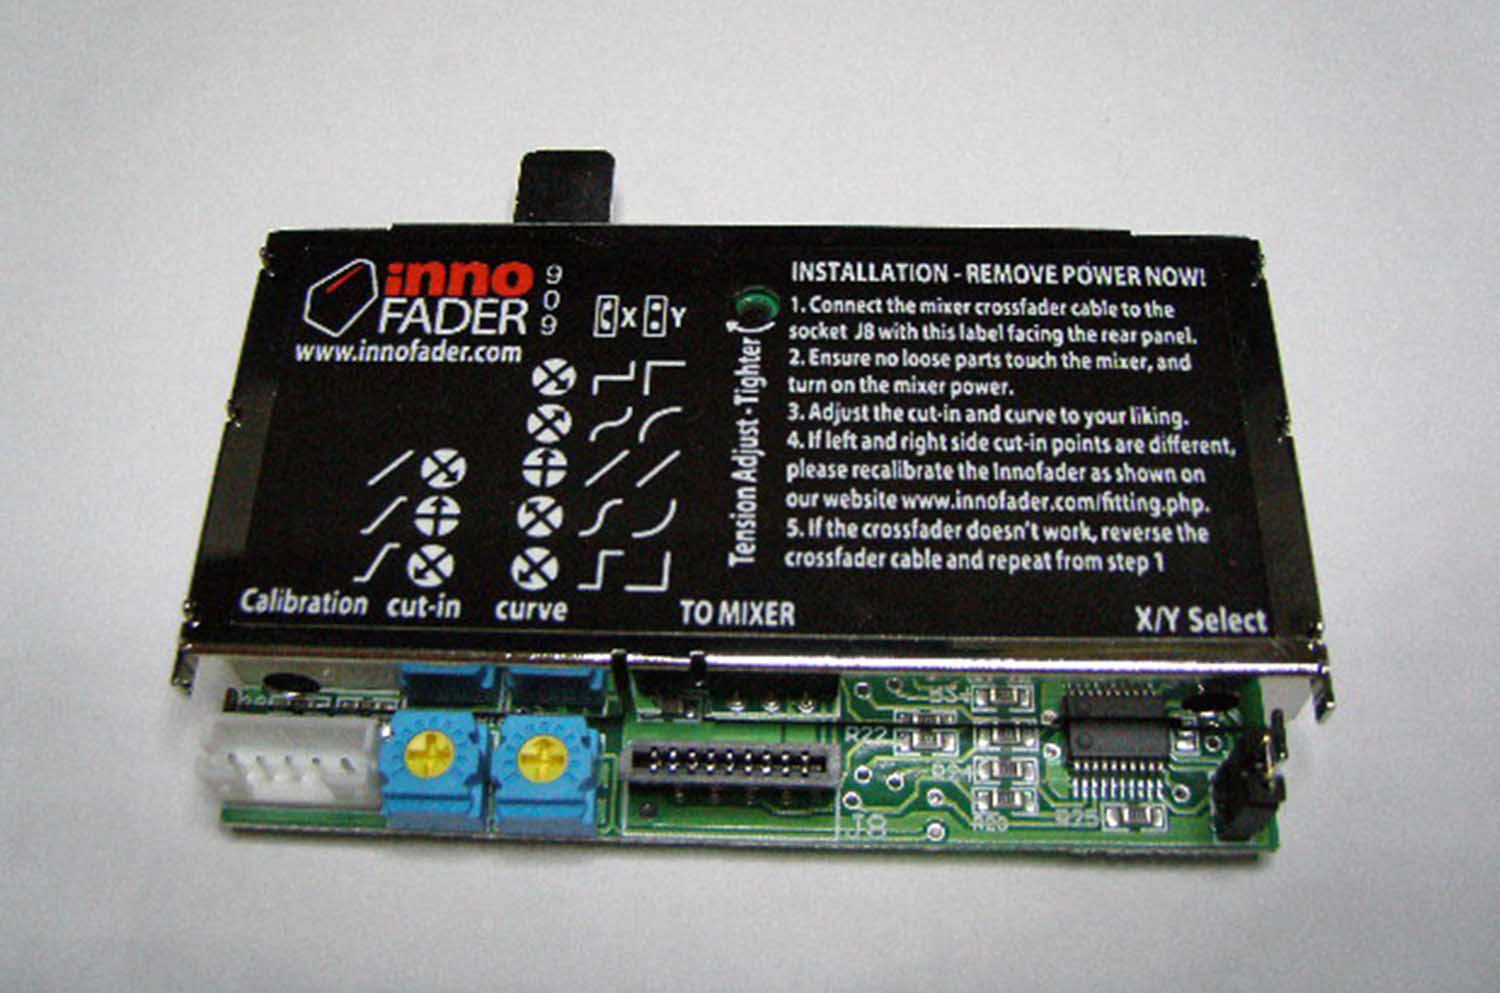 Innofader DJM-909 Crossfader Upgrade For Pioneer DJM-707 and DJM-909 Mixers - Hollywood DJ